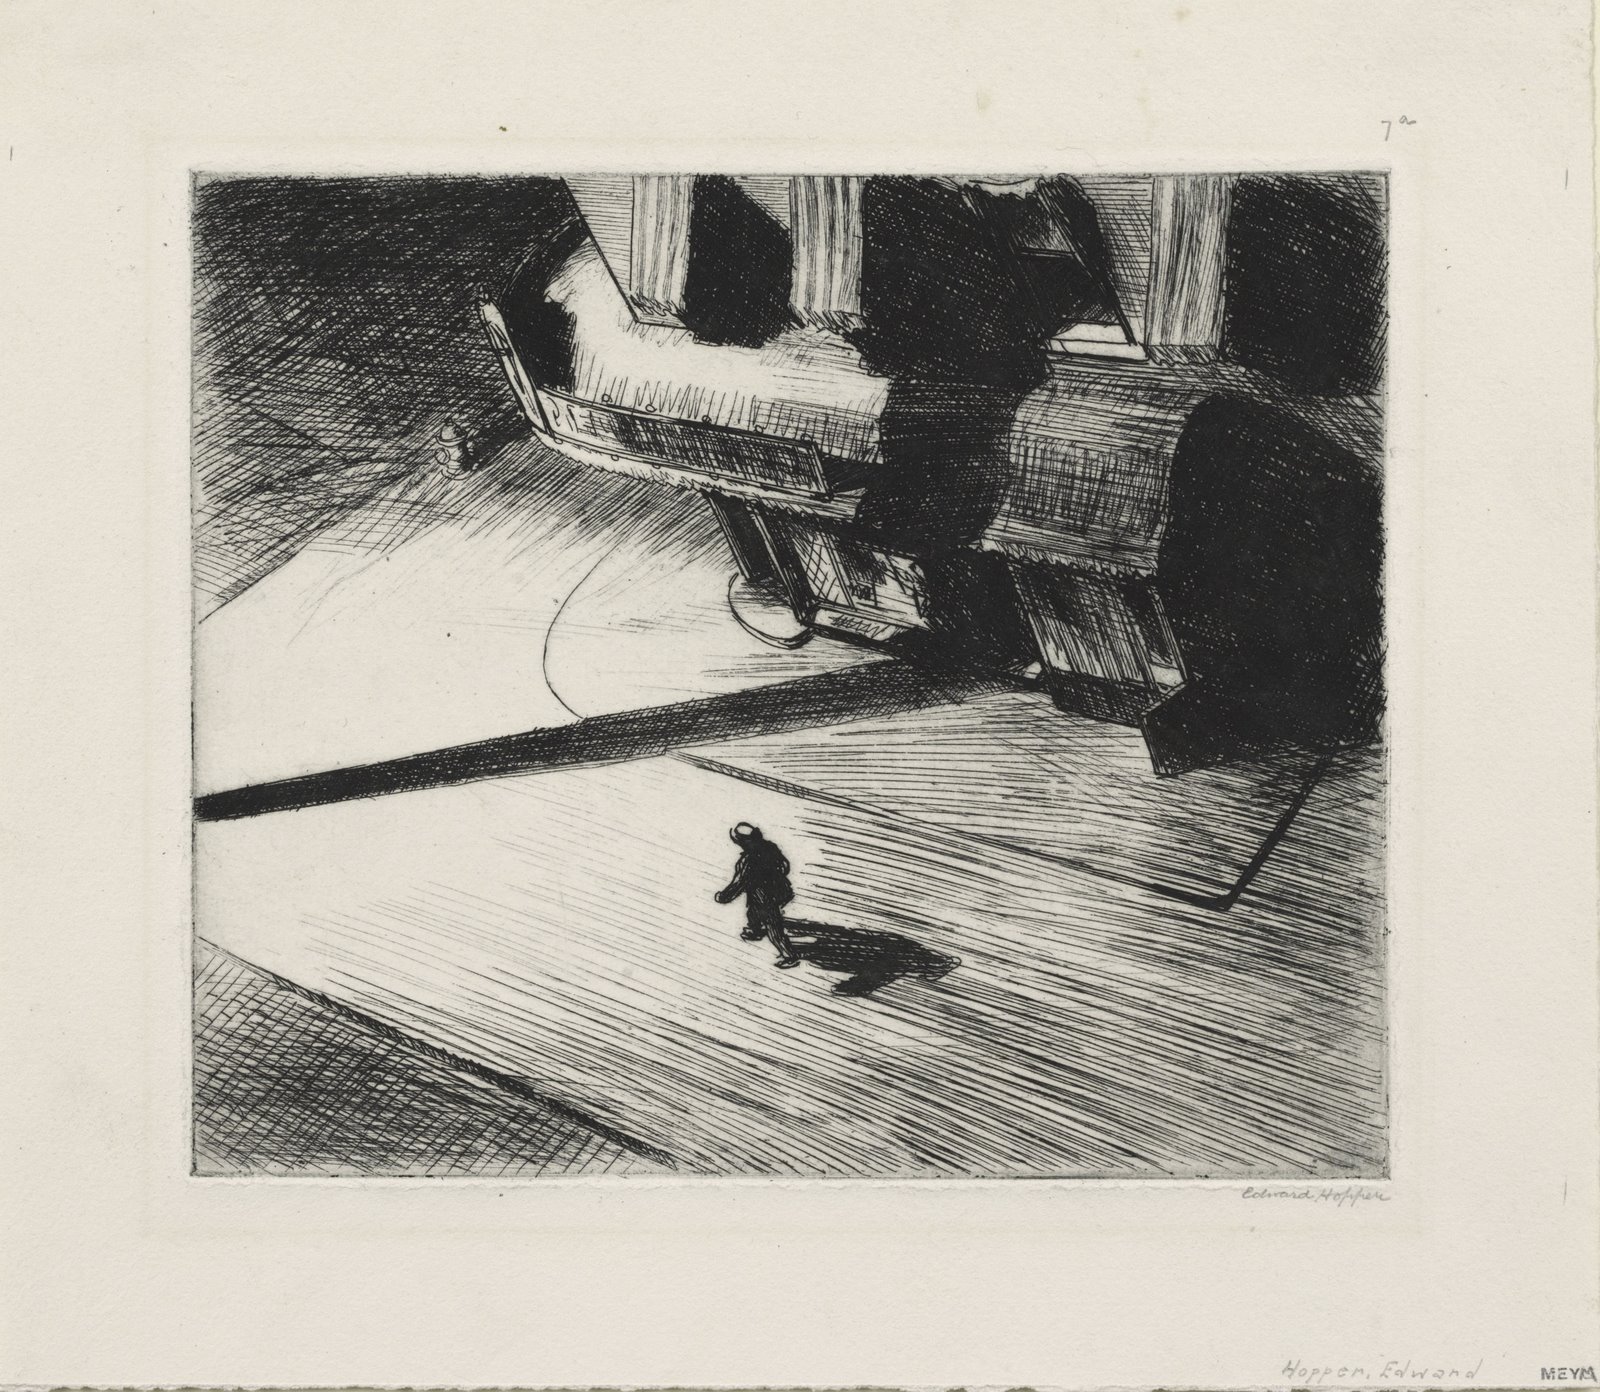 [Edward+Hopper+night+shadows.jpg]